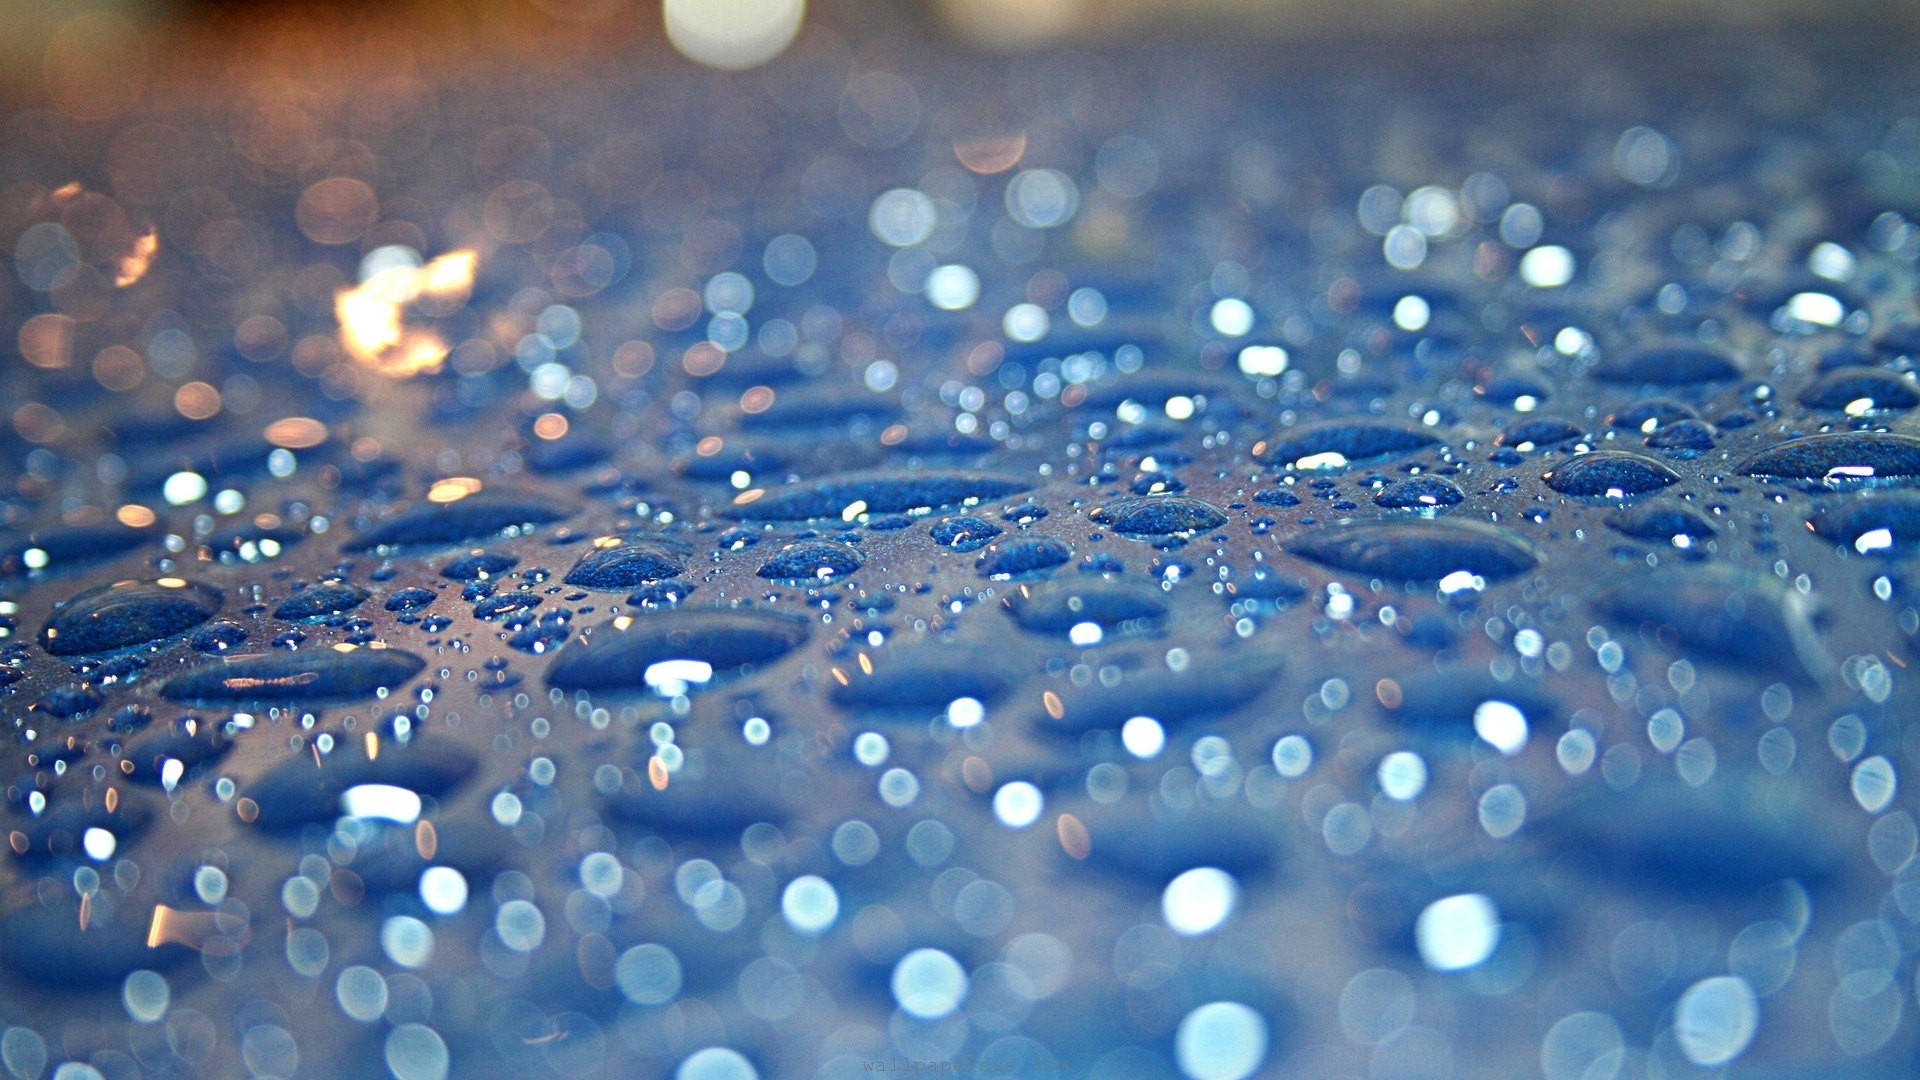 Wallpapers water dew drops on the desktop